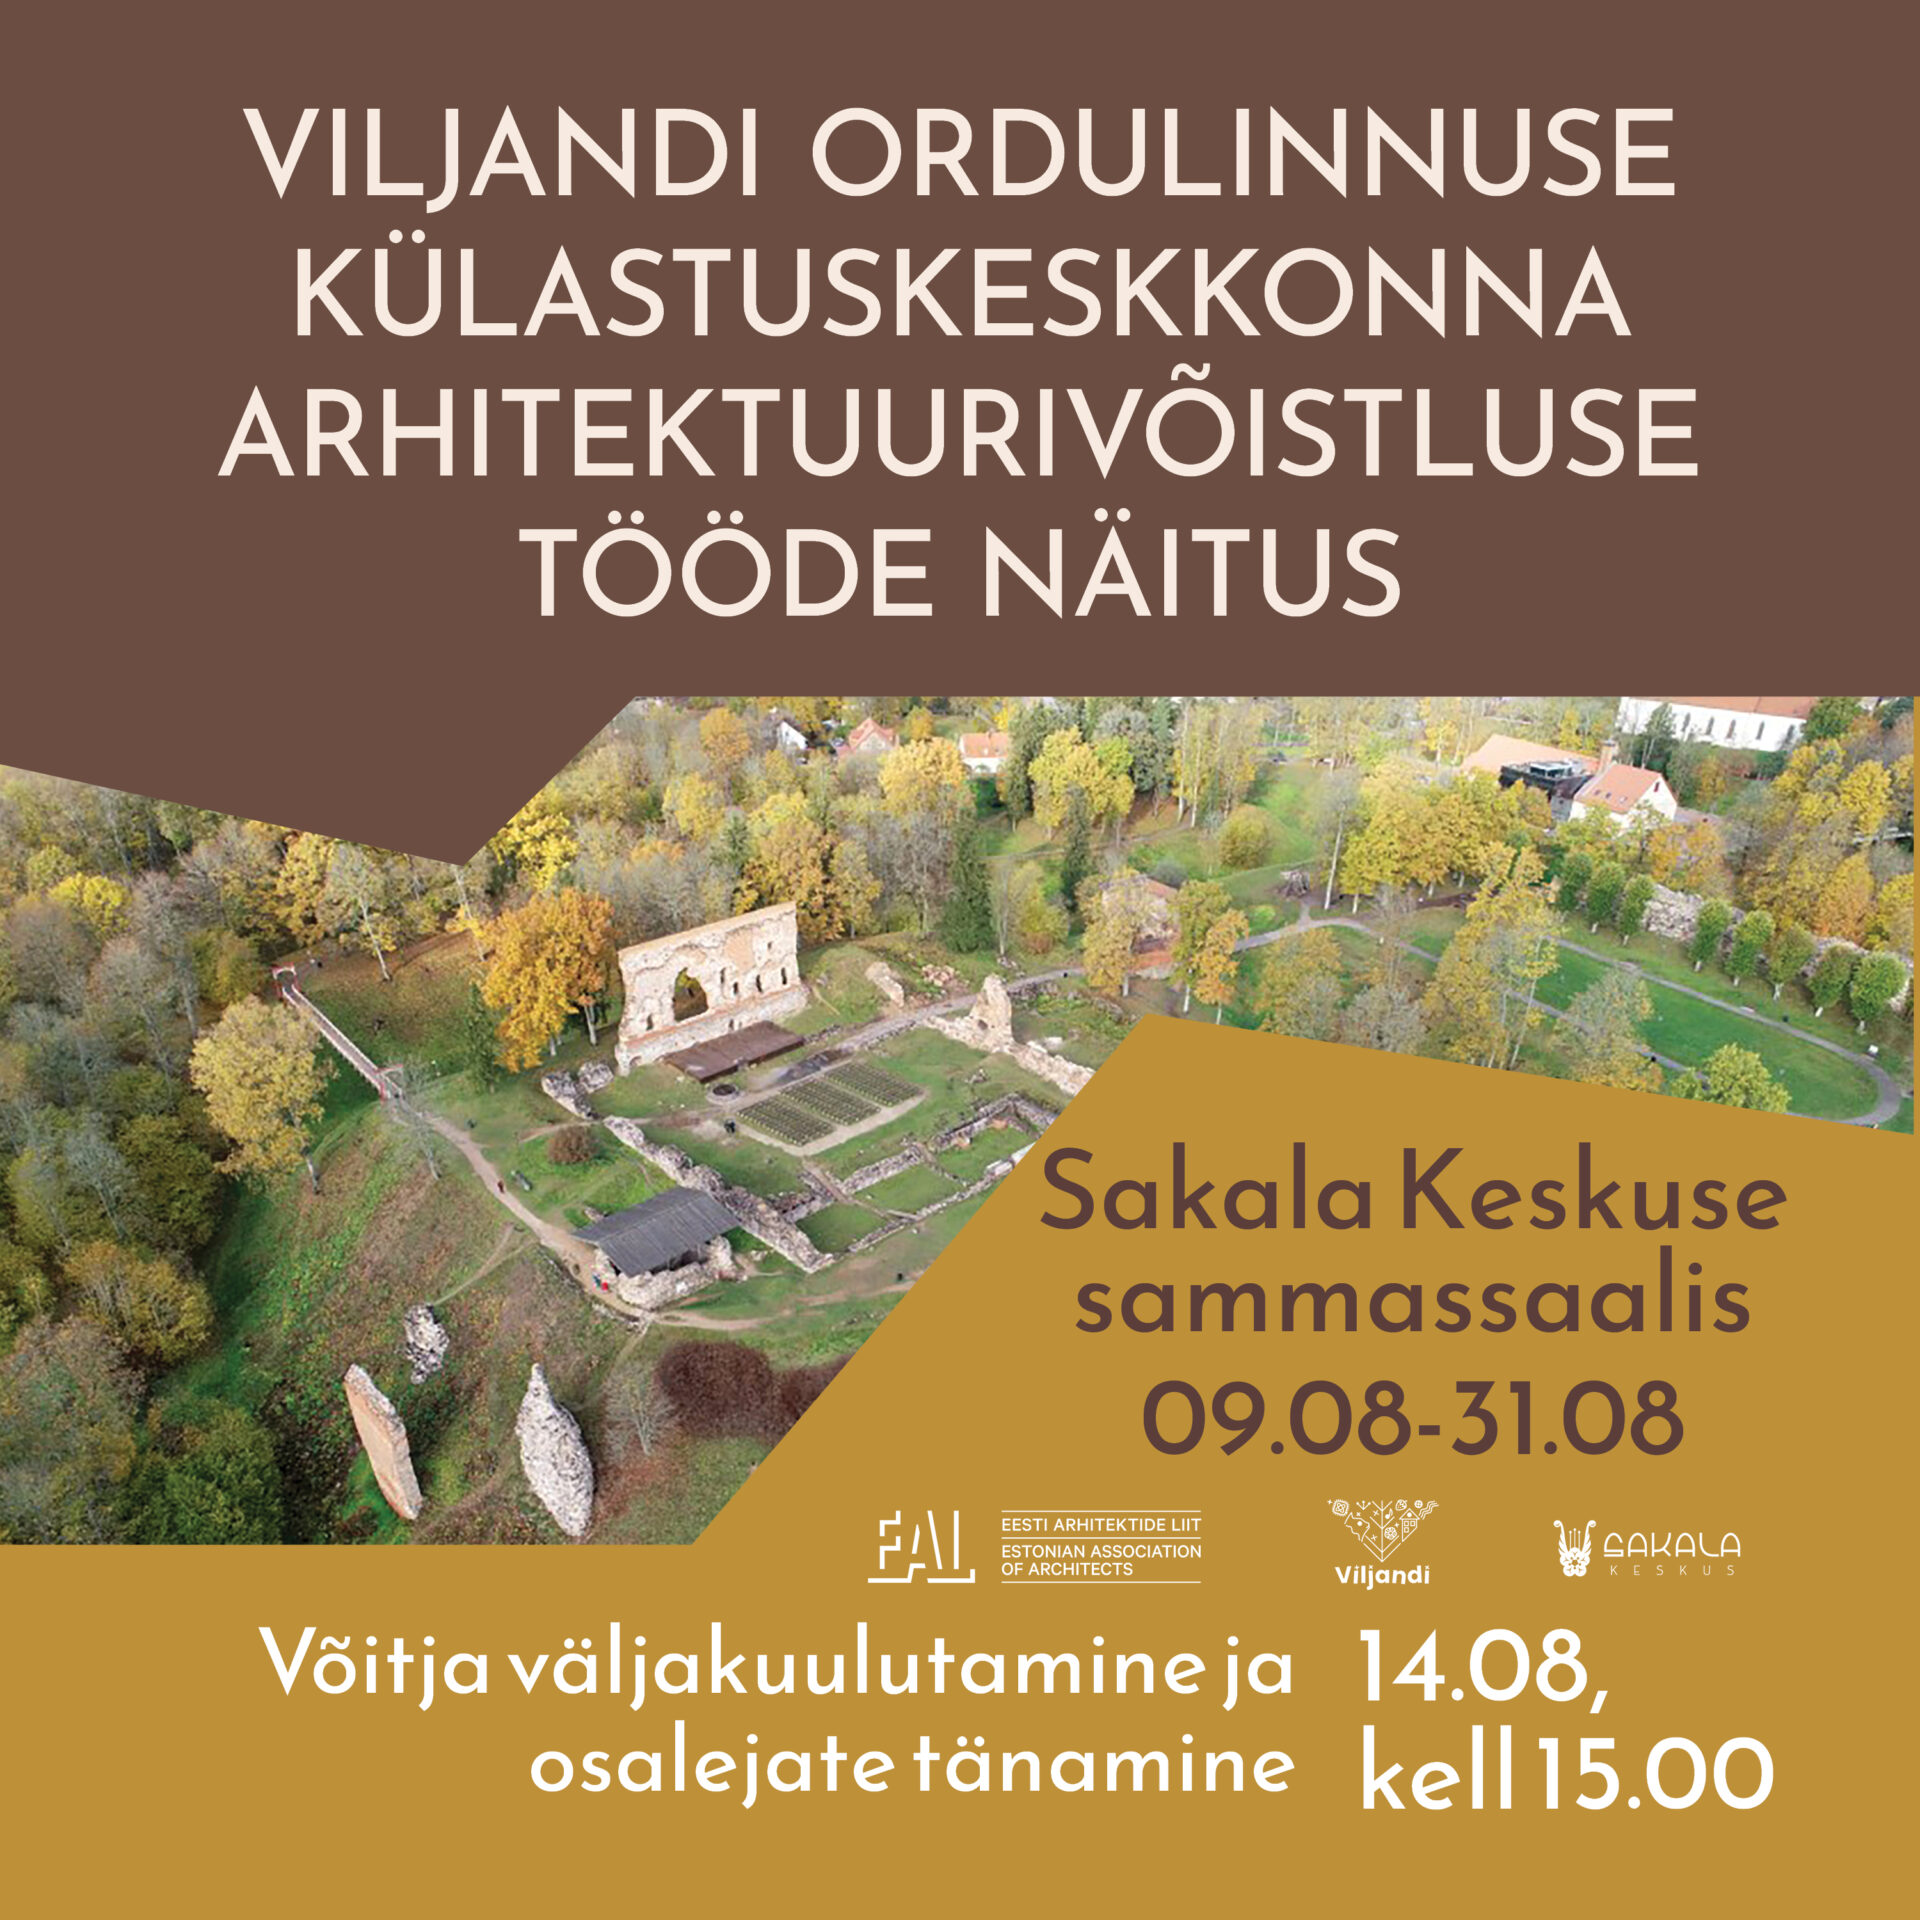 Viljandi ordulinnuse külastuskeskkonna arhitektuurivõistluse näitus Sakala Keskuses